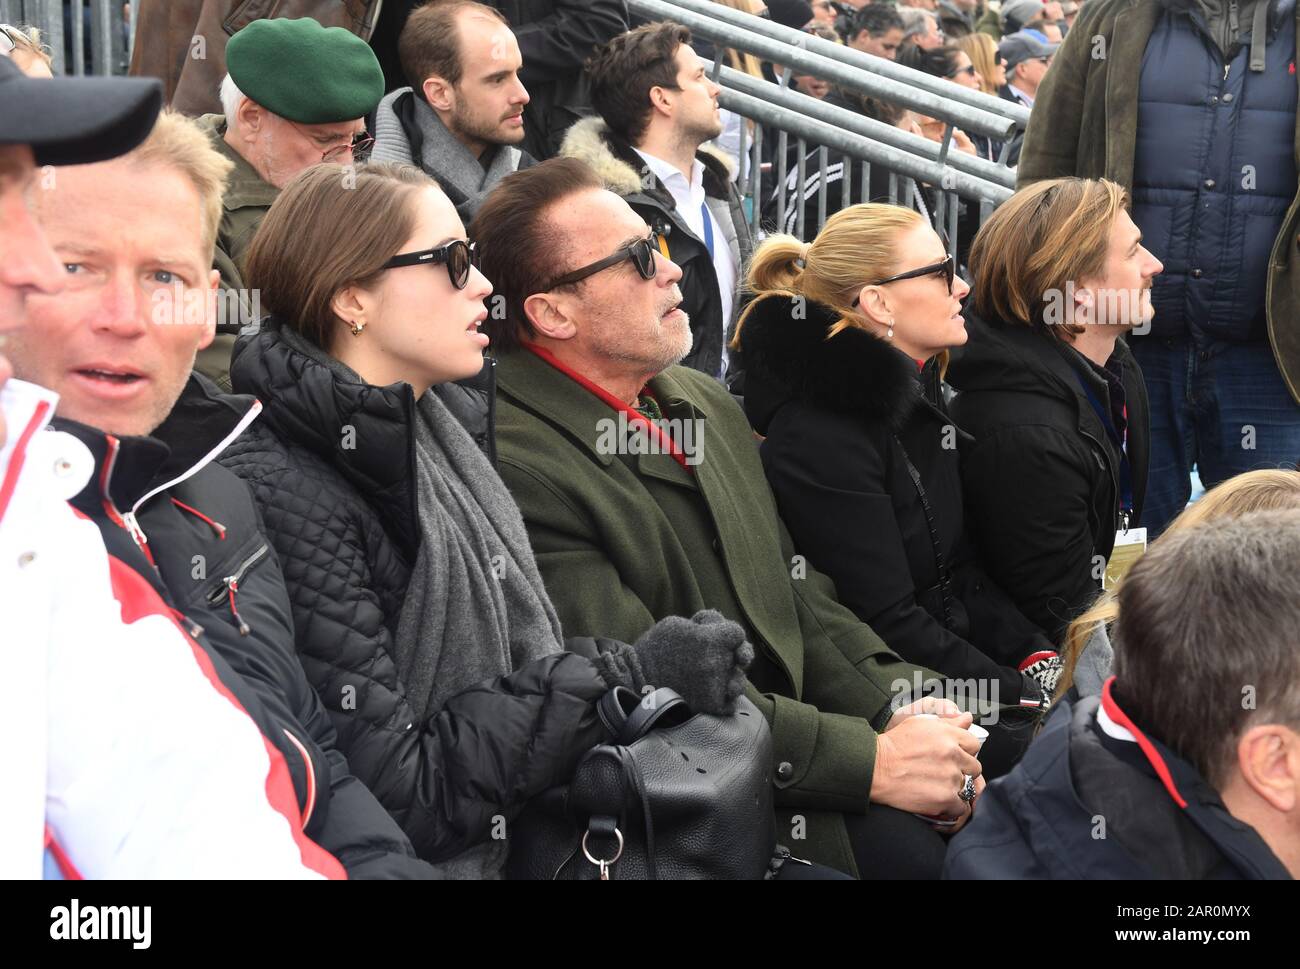 25 Gennaio 2020, Austria, Kitzbühel: L'attore Arnold Schwarzenegger (m), insieme alla figlia Christina (2nd da sinistra), la sua ragazza Heather Milligan (2nd da destra) e suo nipote, Patrick Knapp-Schwarzenegger, (l) sulla tribuna VIP nella zona finale della gara di Hahnenkamm, guardando la discesa degli uomini sulla Streif. Foto: Felix Hörhager/dpa - ATTENZIONE: Solo per uso editoriale in relazione alla segnalazione attuale e solo con la menzione completa del credito di cui sopra. Nessuna pubblicità. Foto Stock